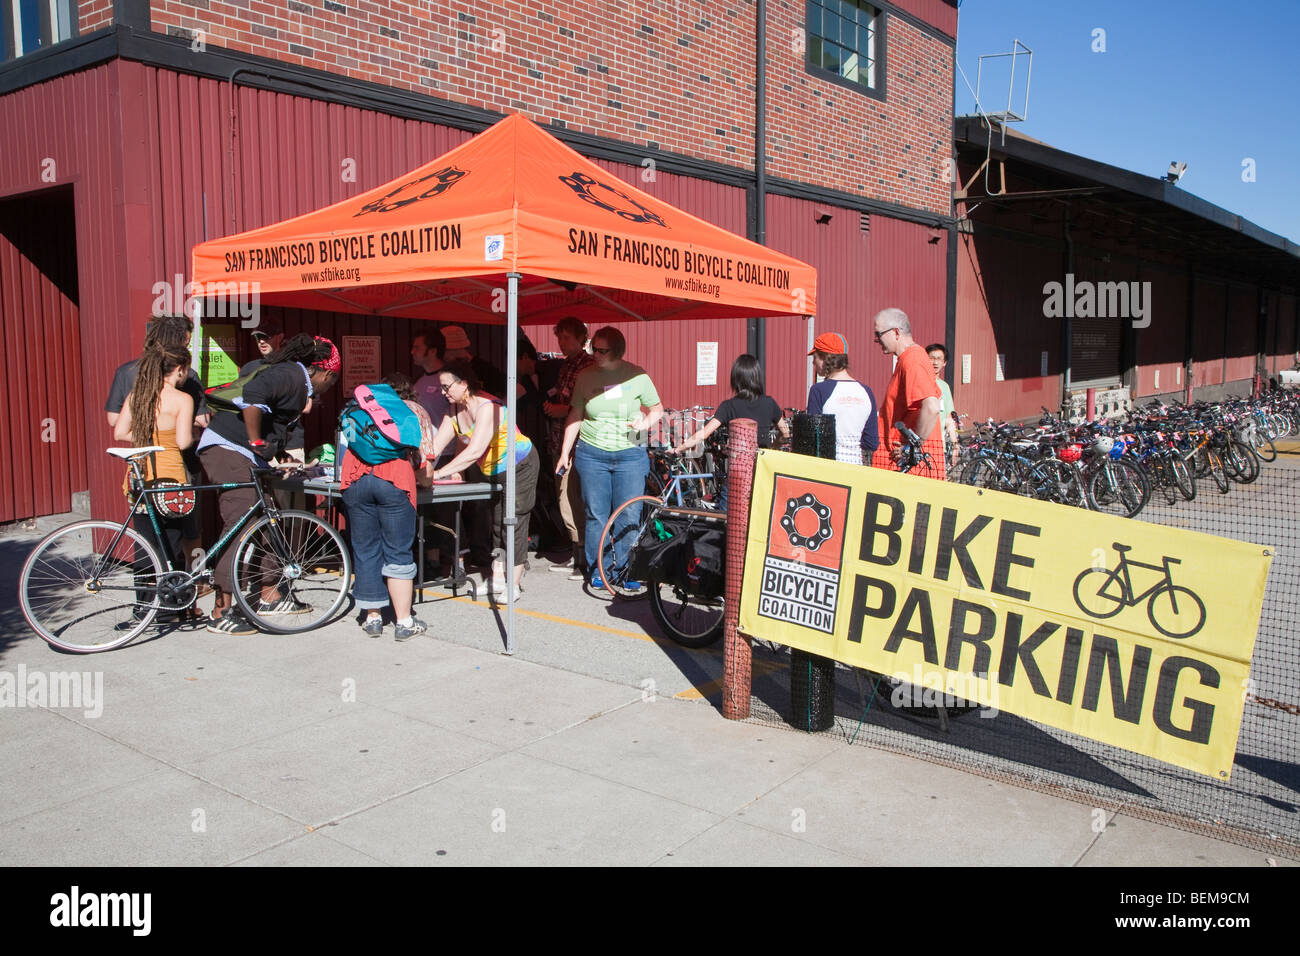 Kostenlose, sichere Fahrrad-Parkplatz auf dem Green Festival in San Francisco. Stockfoto